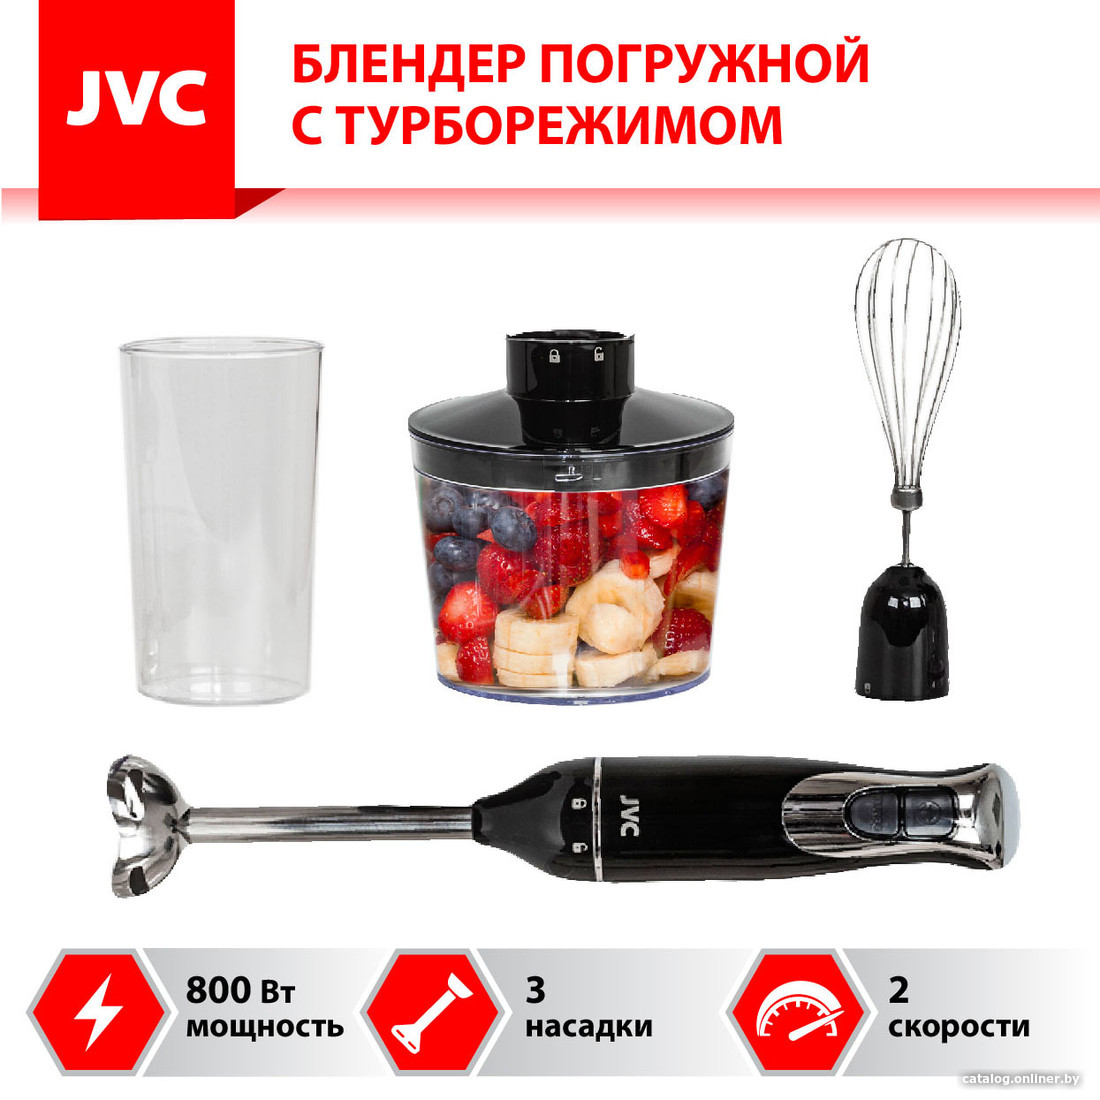 

Погружной блендер JVC JK-HB5014